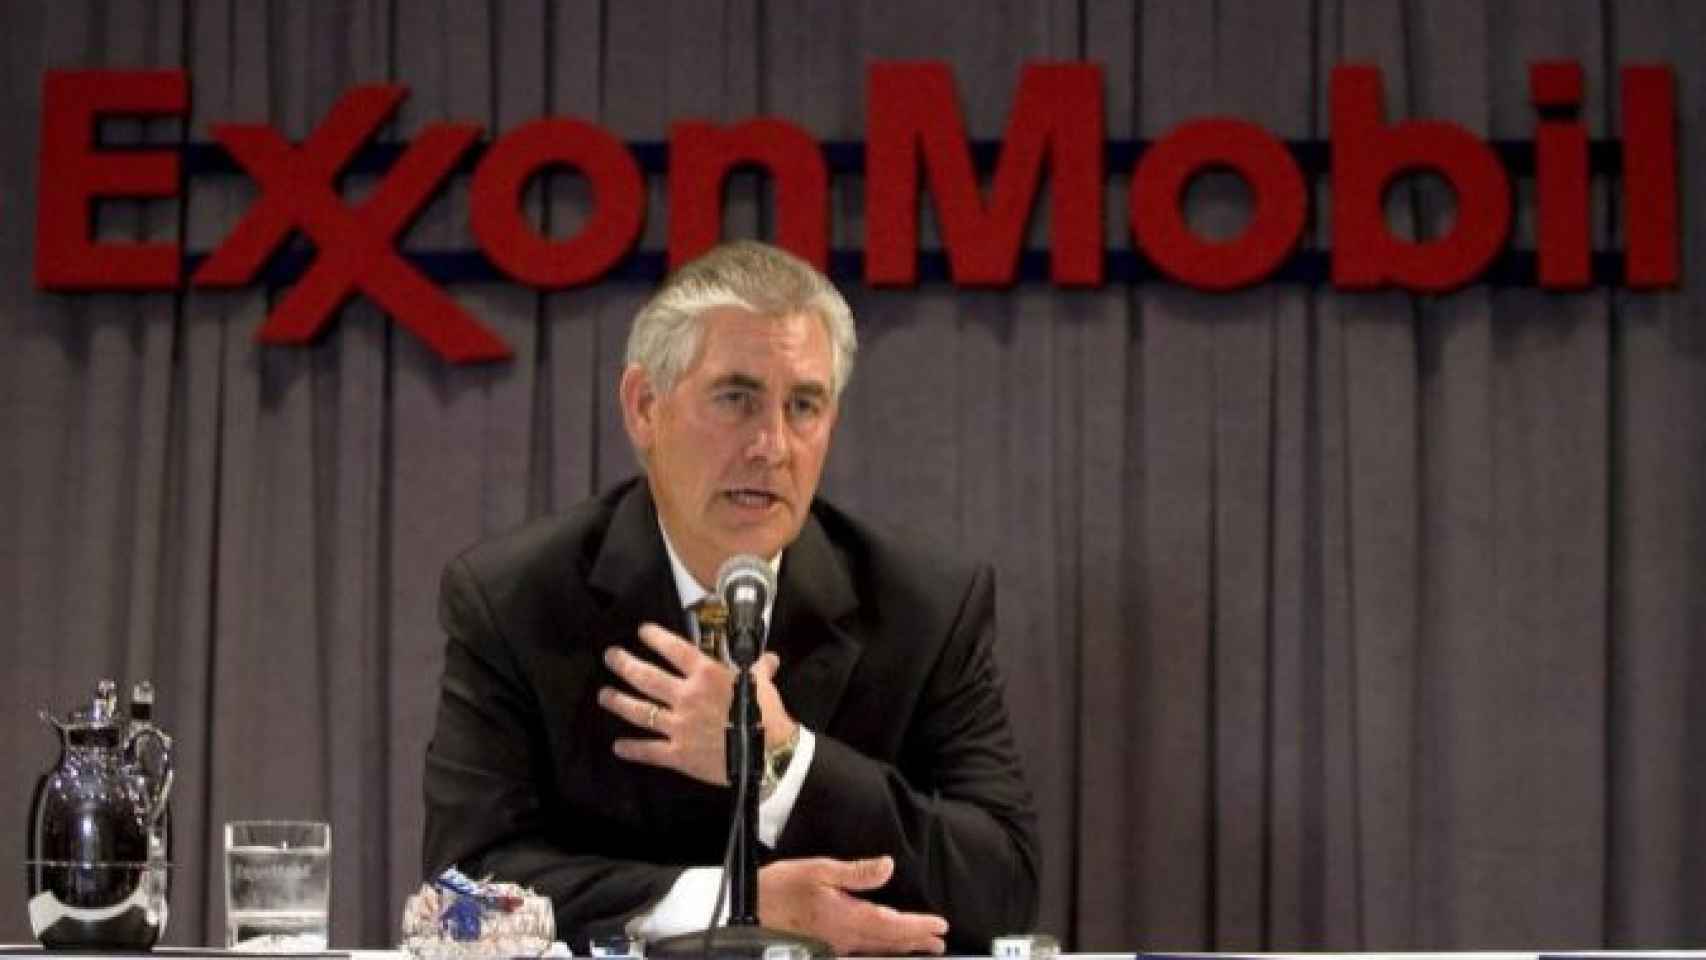 El máximo directivo de ExxonMobil, Rex Tillerson, en una imagen de archivo / EFE